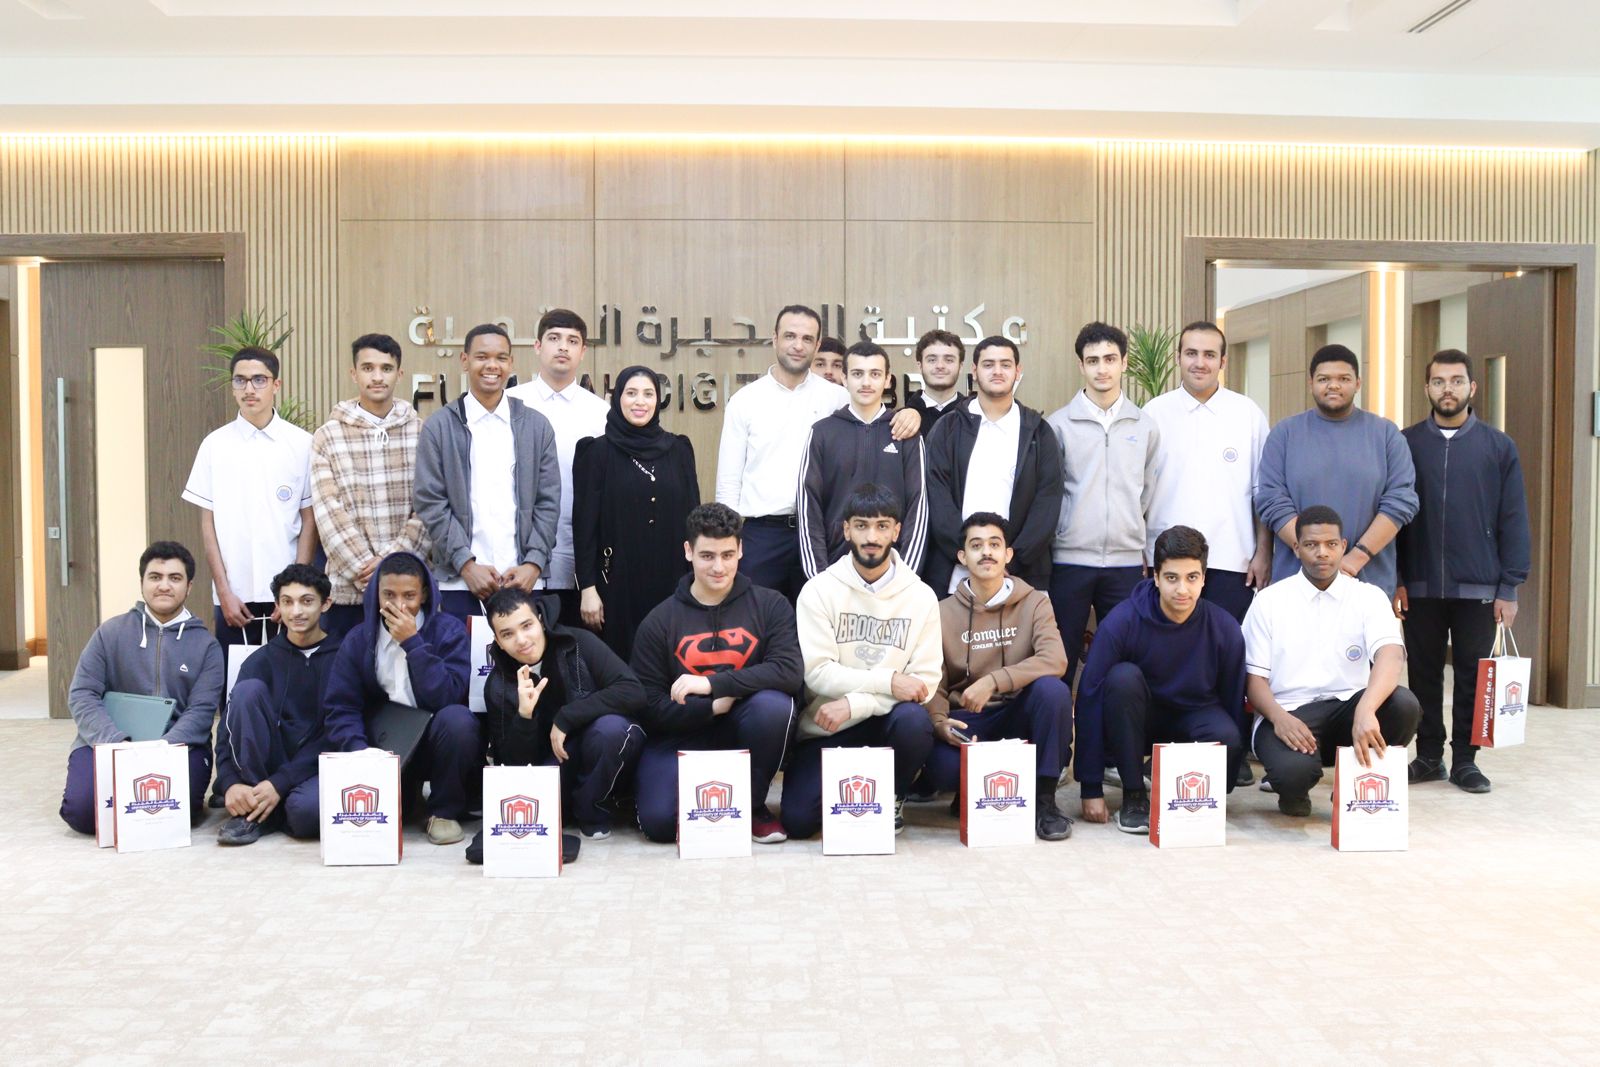 مكتبة الفجيرة الرقمية تستضيف طلبة مدرسة الإمارات الخاصة في زيارة تعليمية